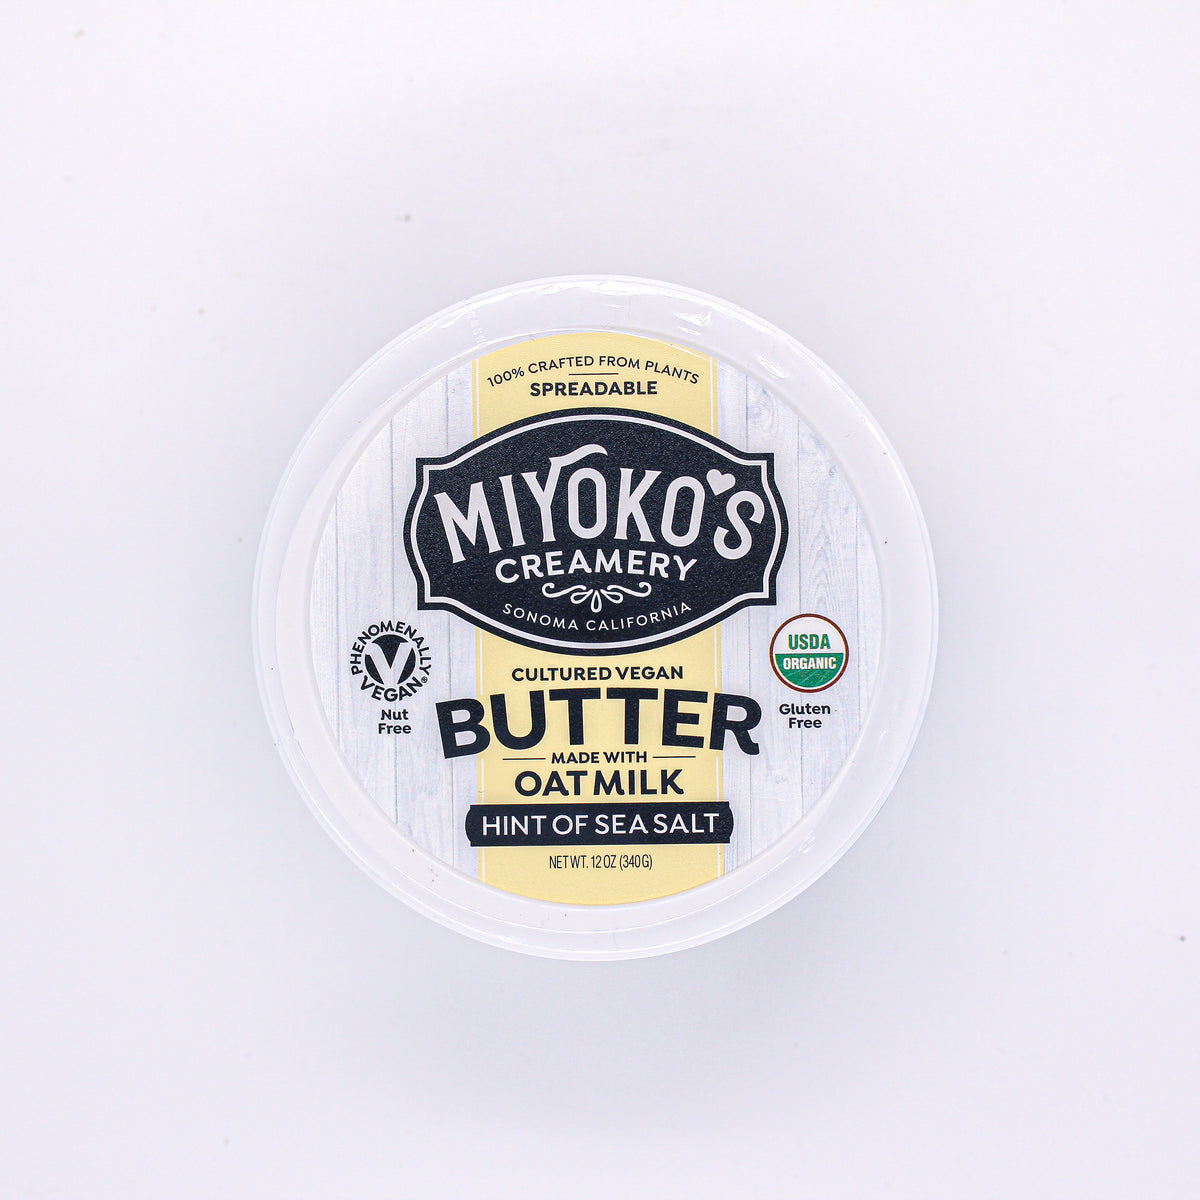 Miyokos Cultured Butter Oat